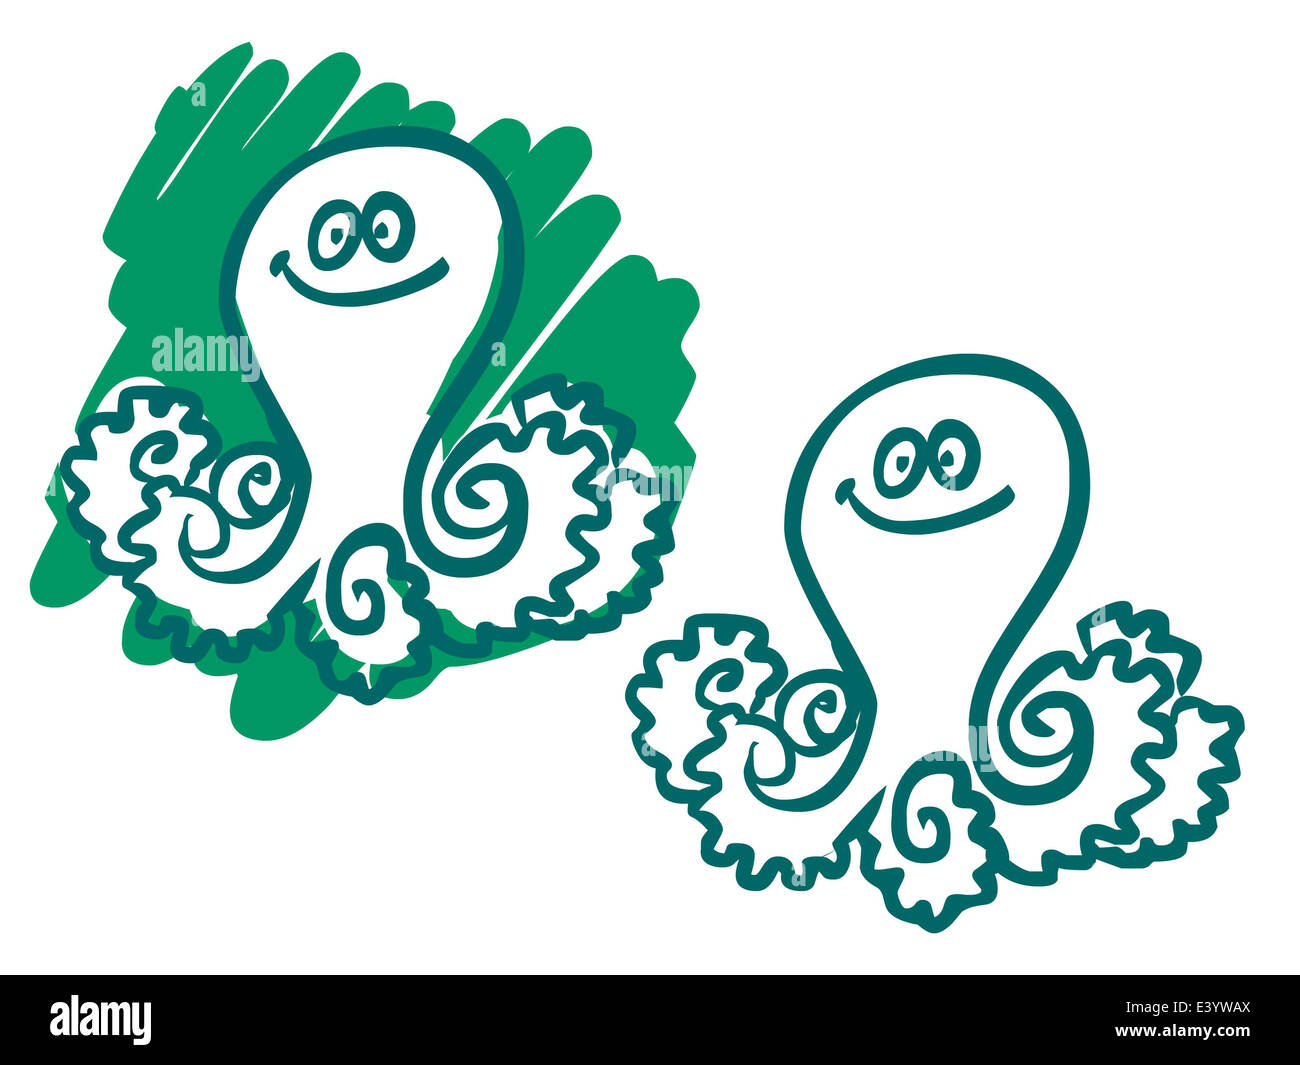 Cartoon illustration d'une pieuvre. Silhouette sur fond blanc et vert Banque D'Images